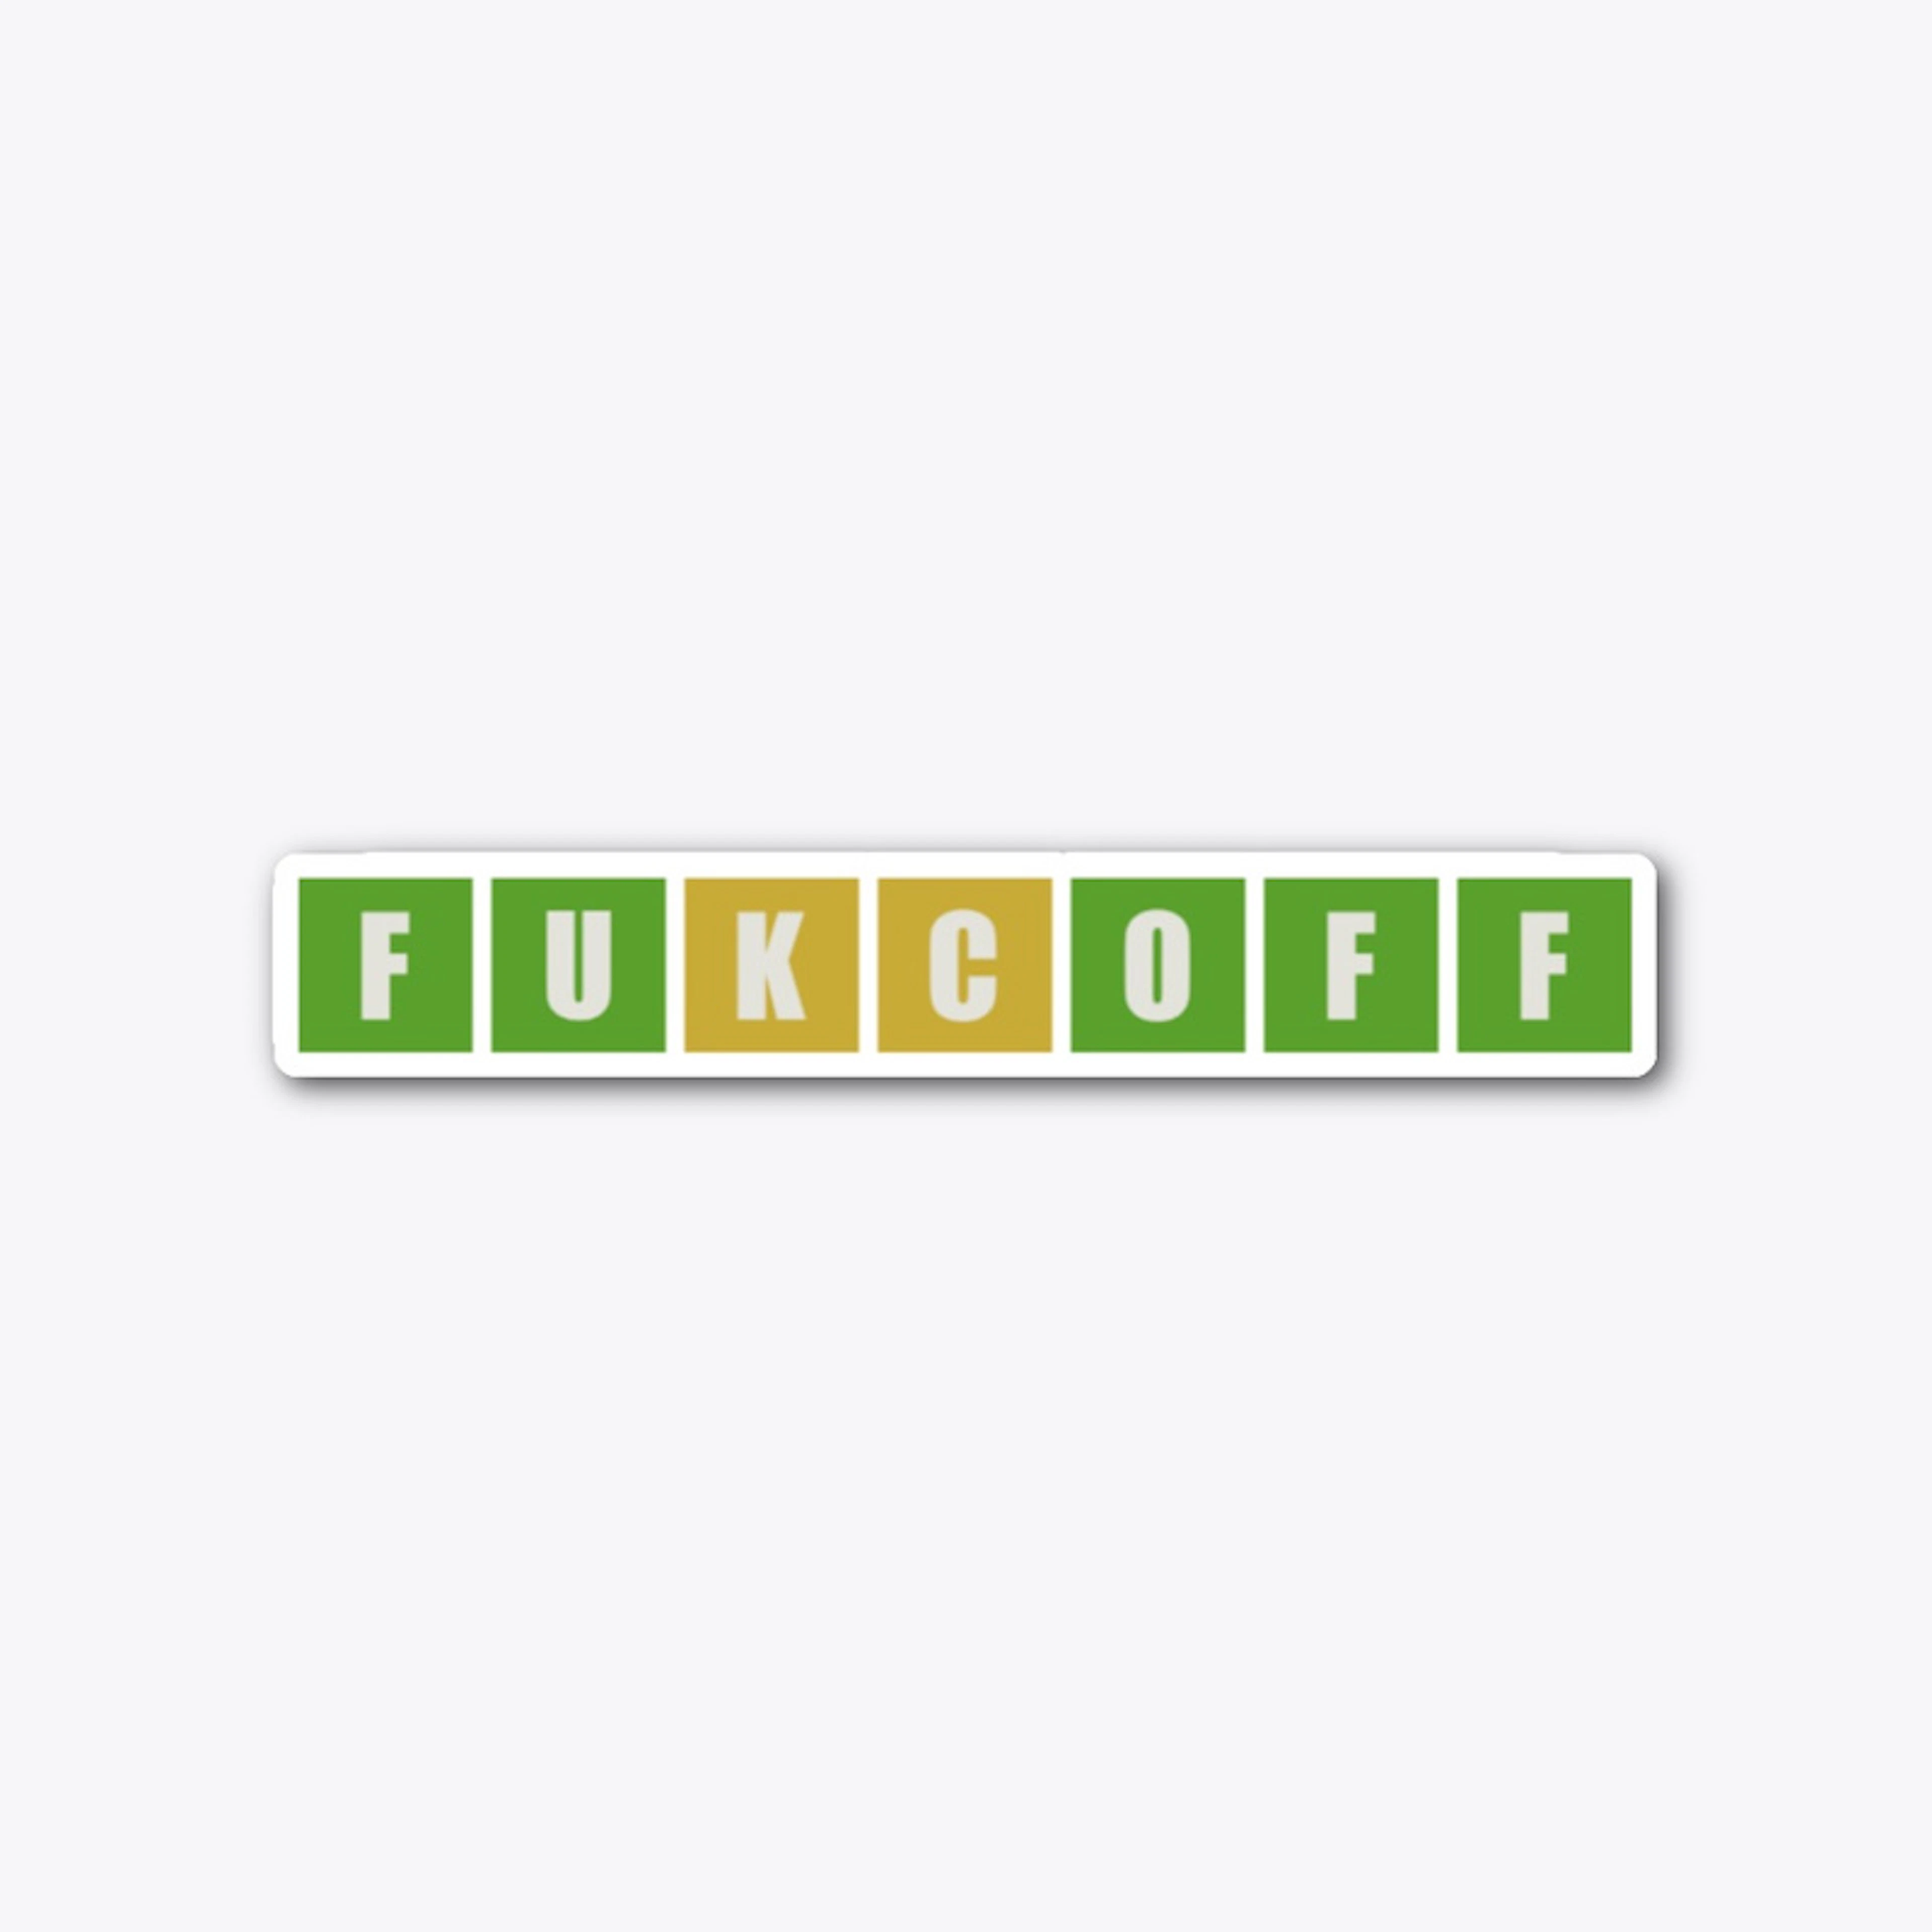 FUKCOFF Wordle Sticker